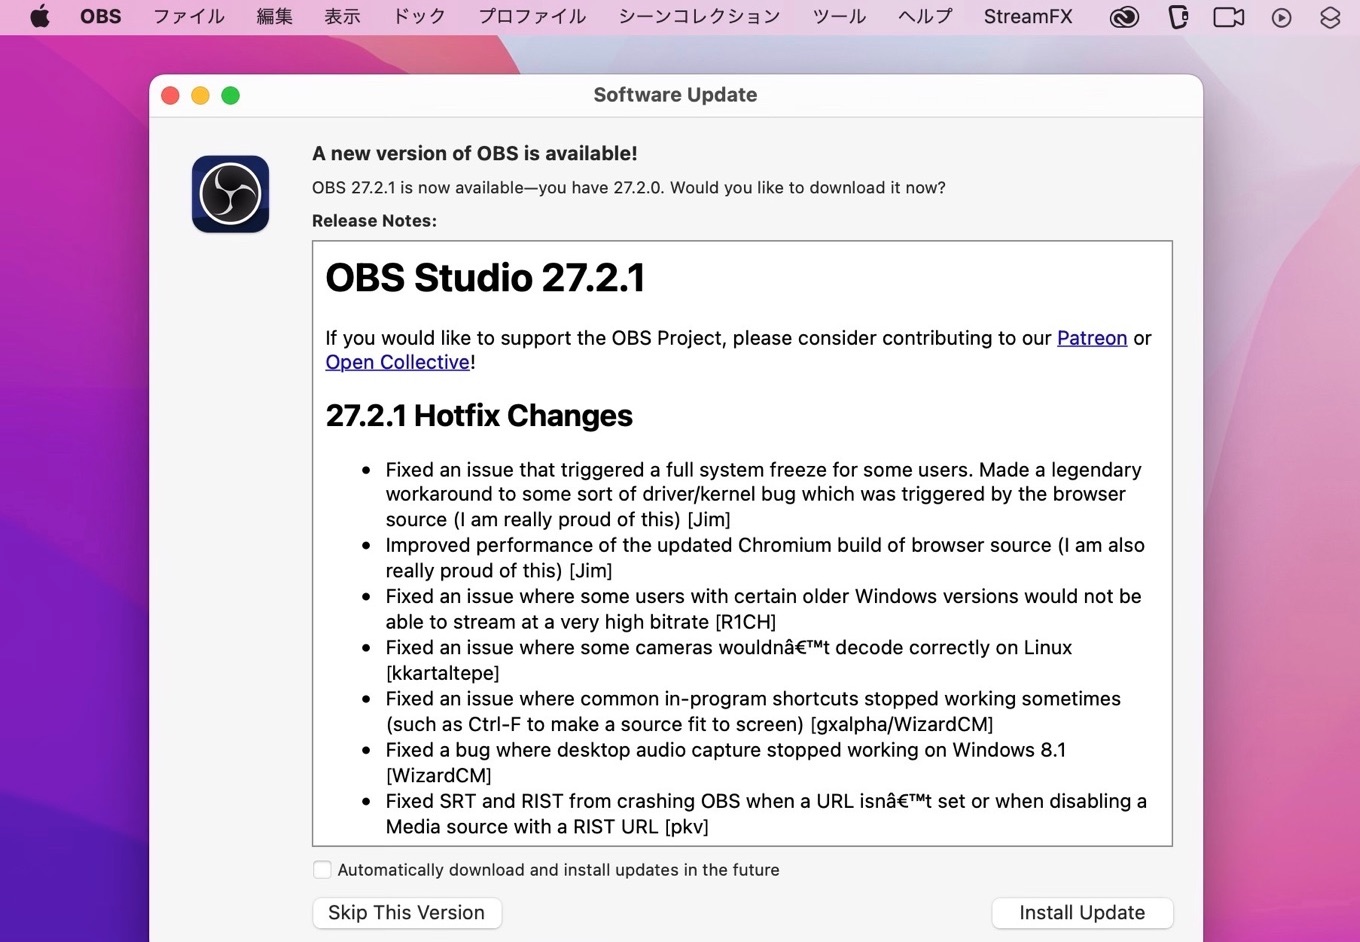 OBS Studio 27.2.1 Hotfix Changes